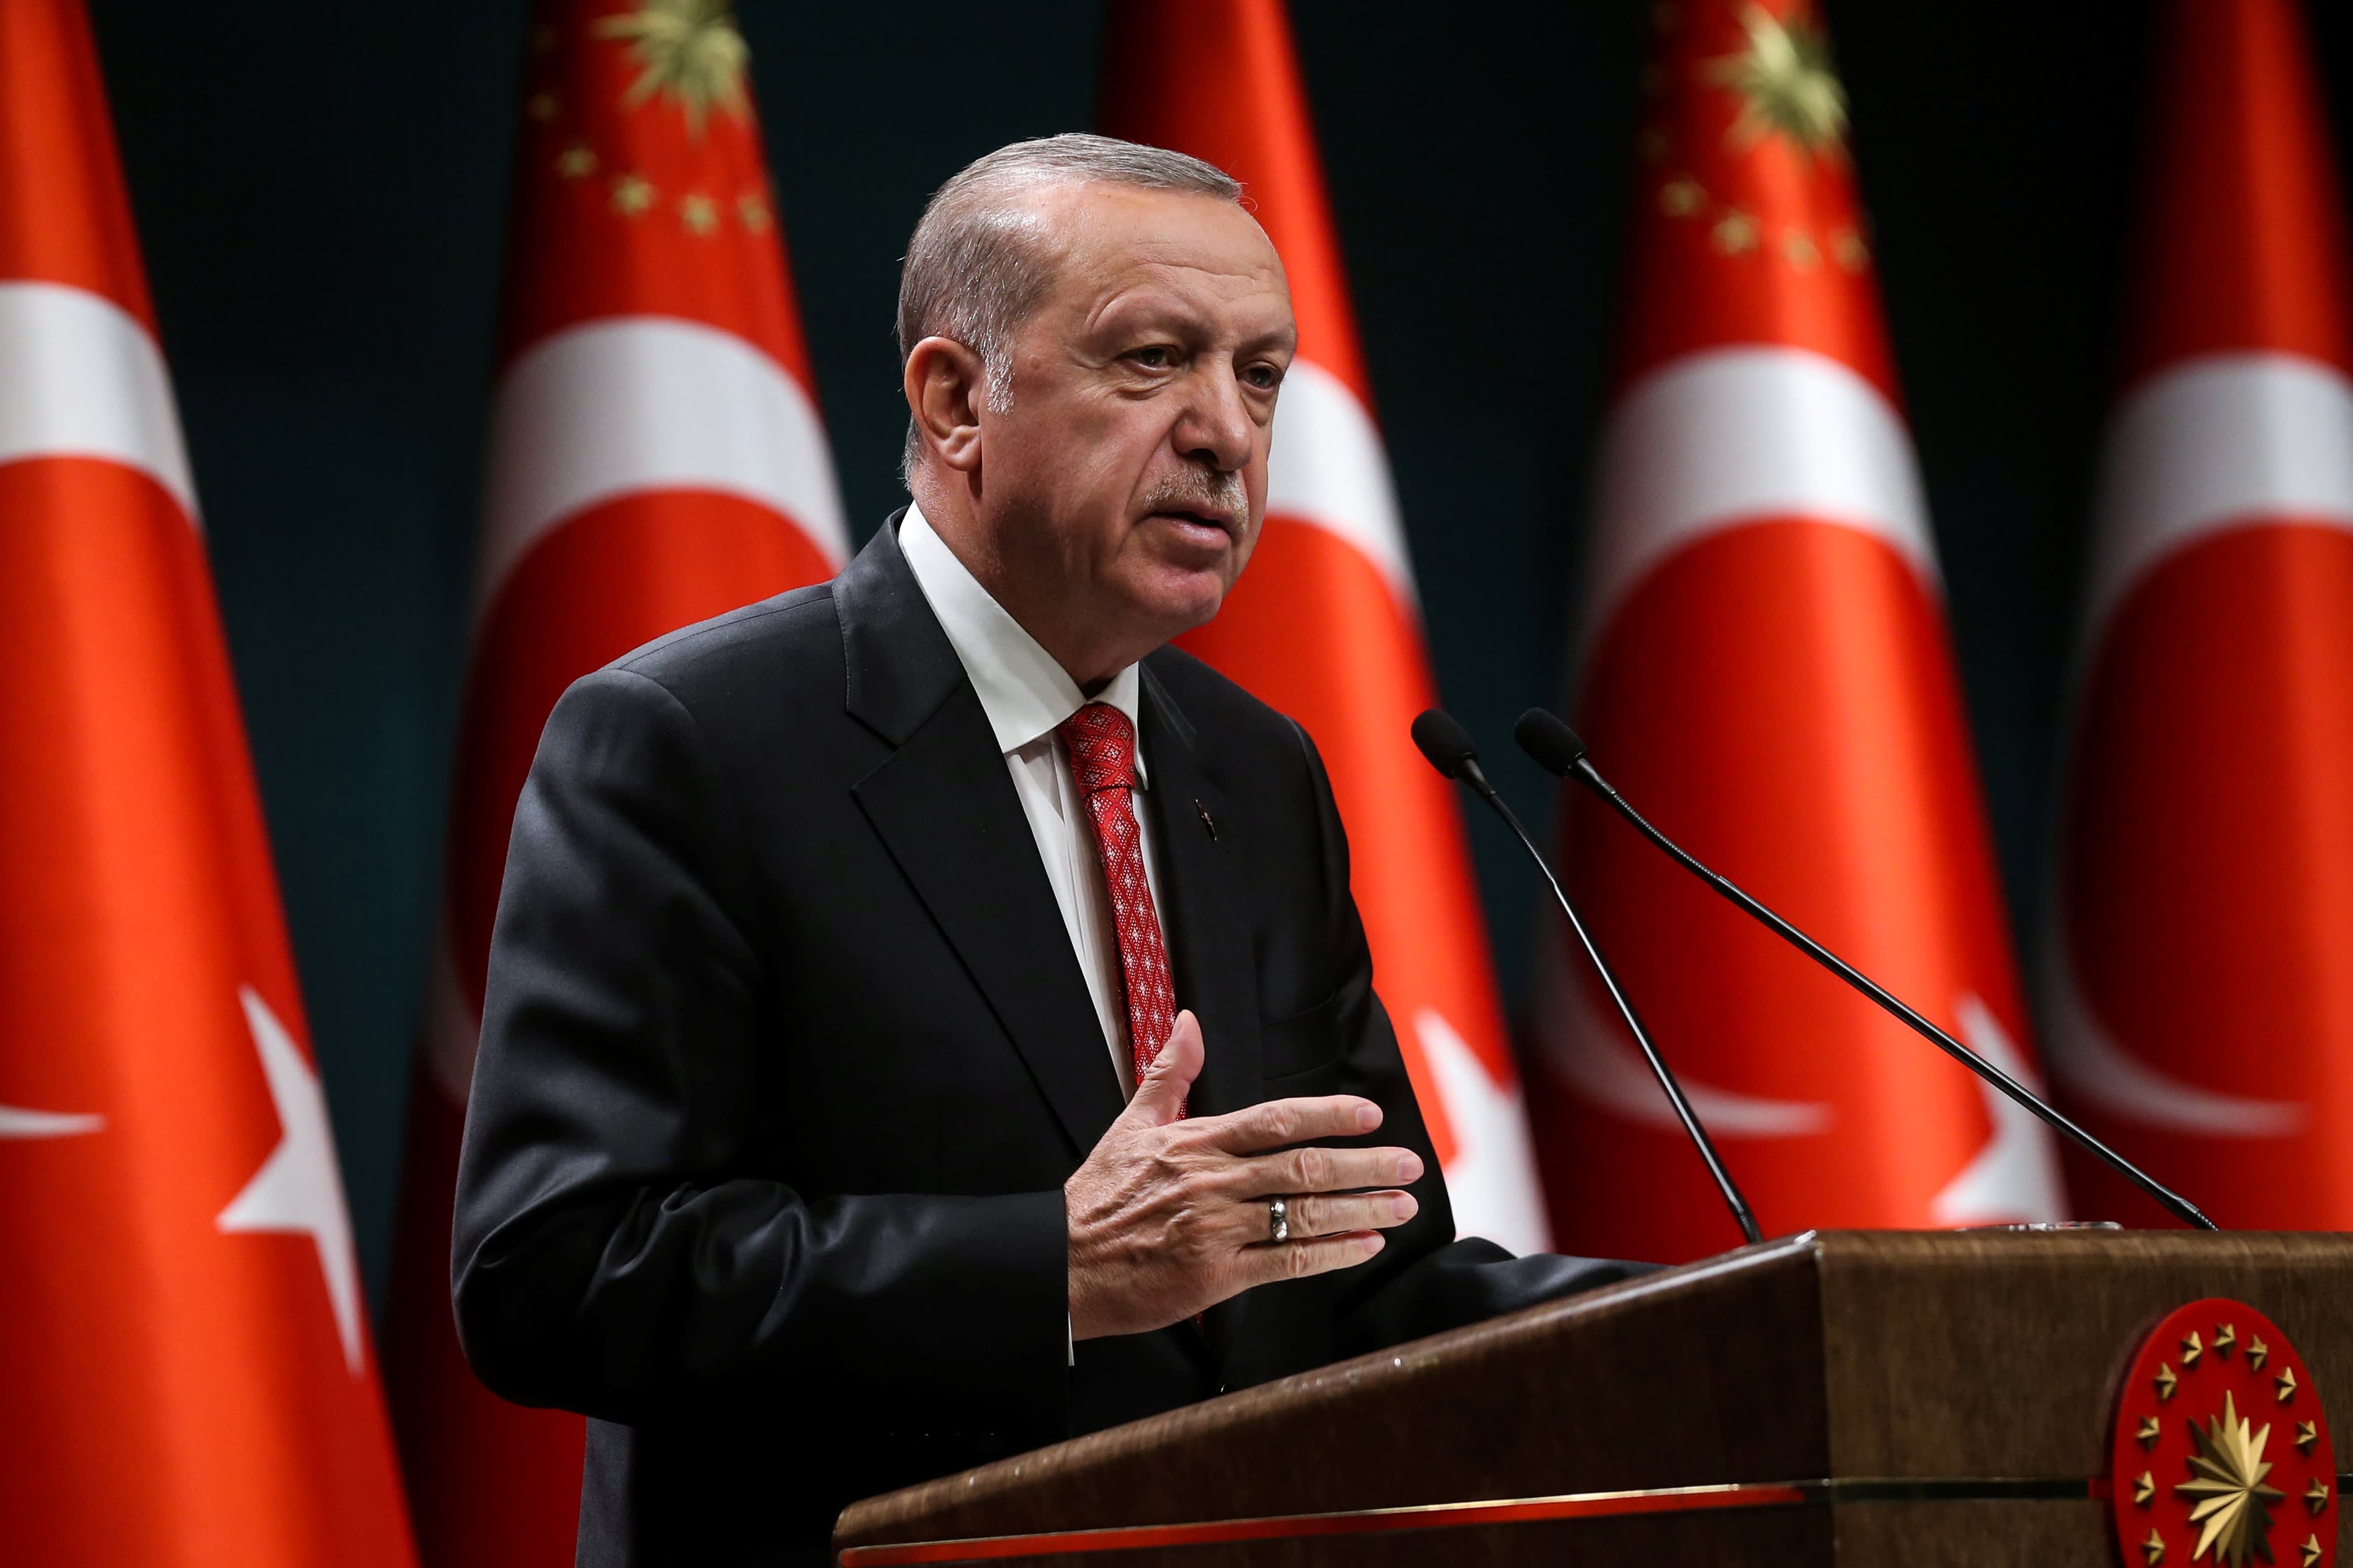 Erdogan sacks Turkey's hawkish central bank governor after rate hike